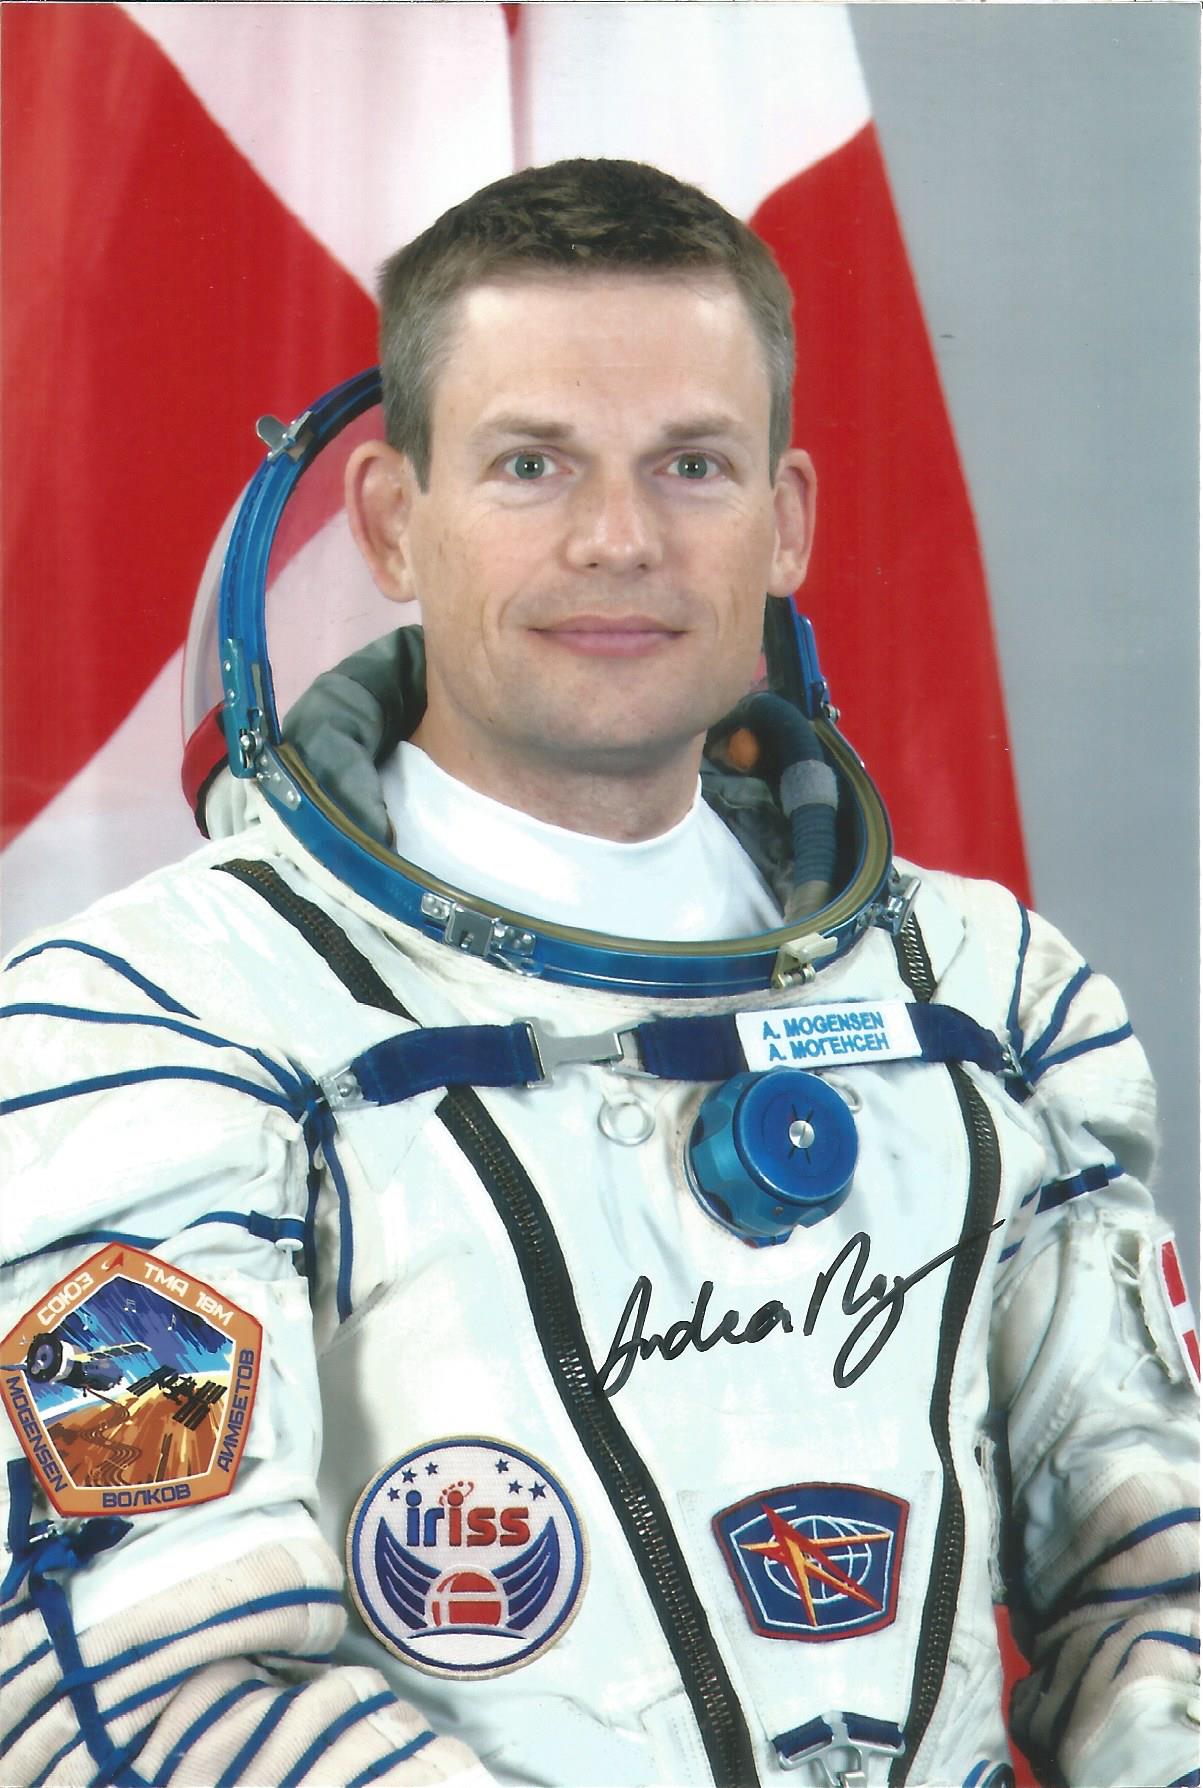 A. Mogensen Danish Soyuz Cosmonaut signed 6 x 4 colour photo. Good condition. All autographs come